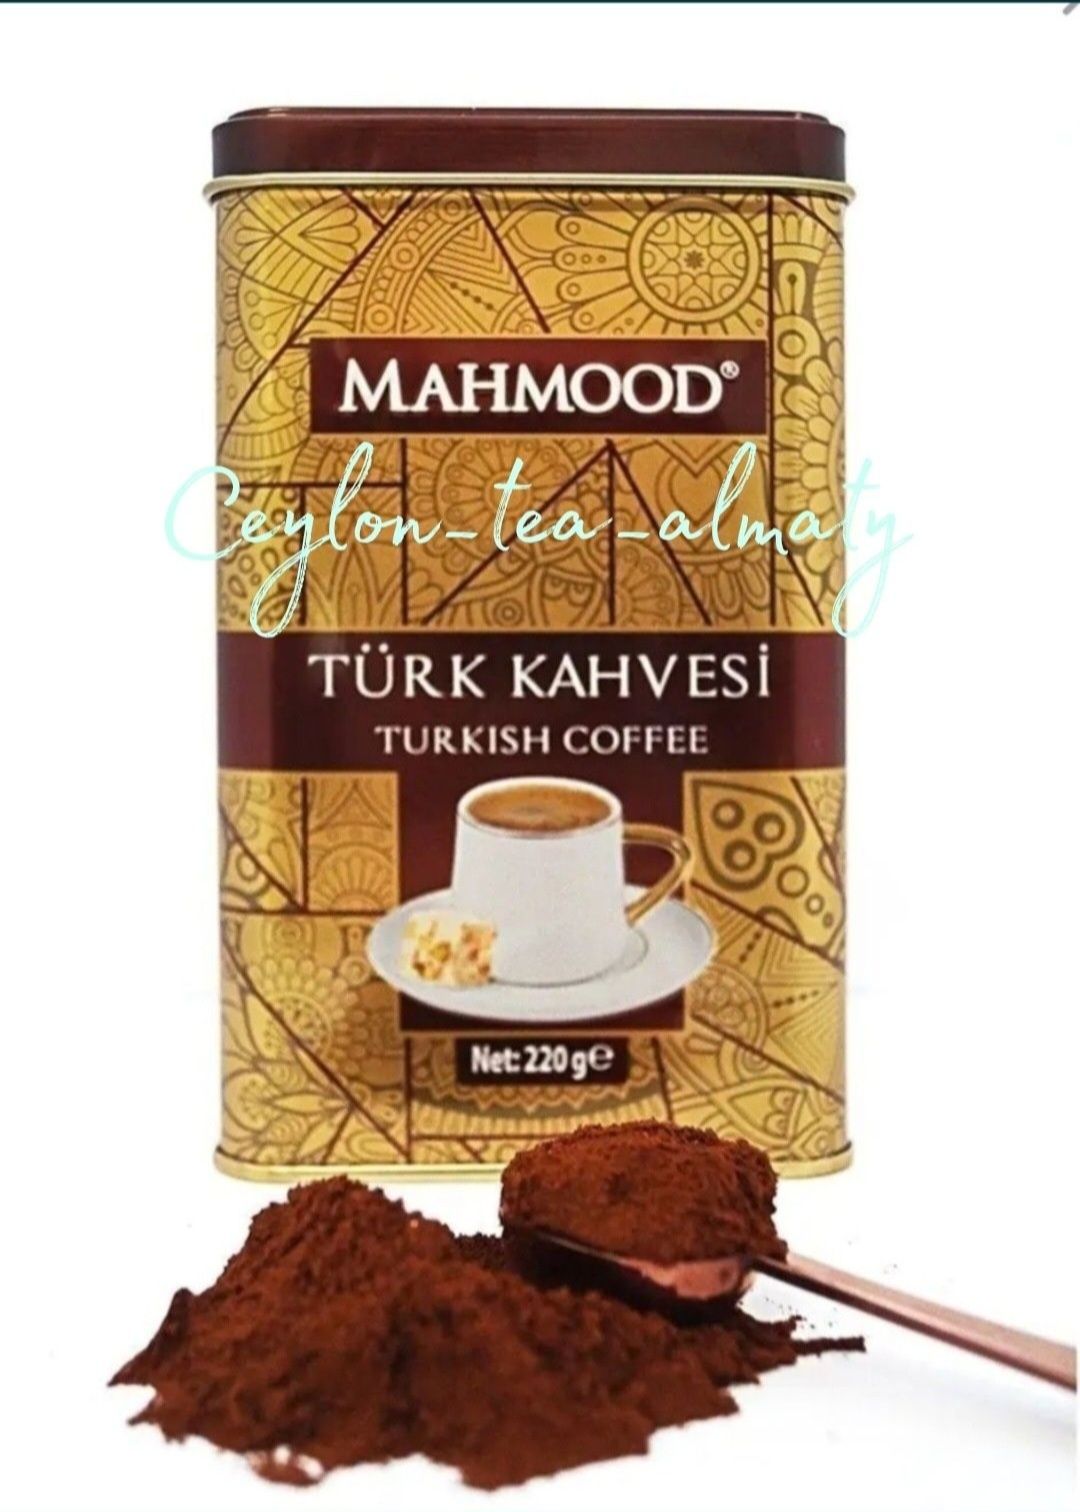 Mahmood Coffee/Turk Kahvesi/Турецкий/кофе/Premium/молотый/220гр